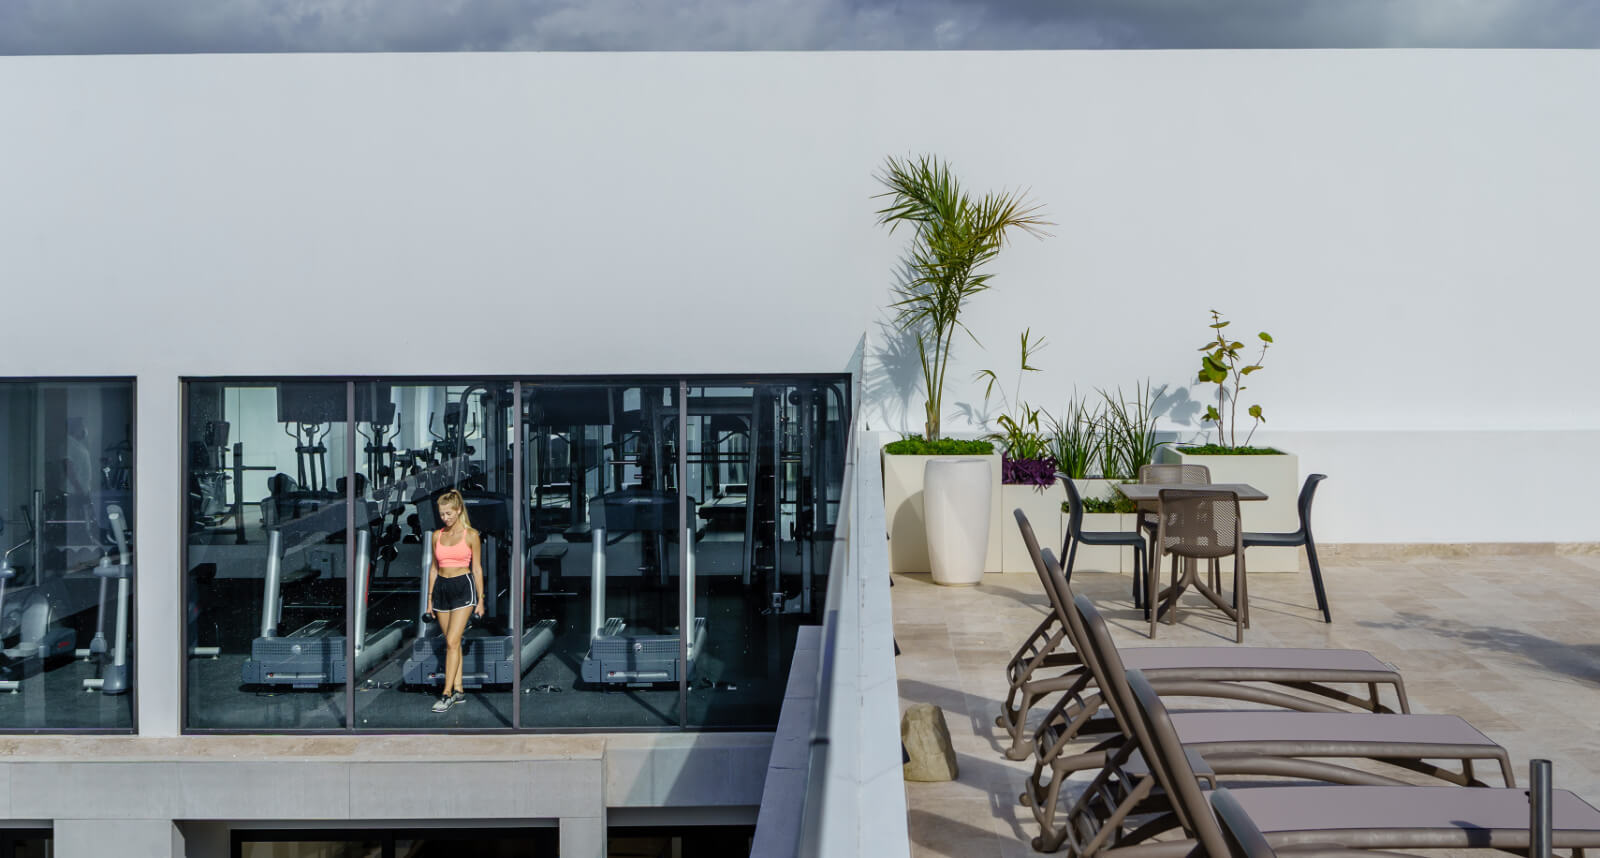 Condominio con Terraza Privada, 2 Albercas, Jacuzzi y Yoga deck, Zona Centro, venta, Playa del Carmen.